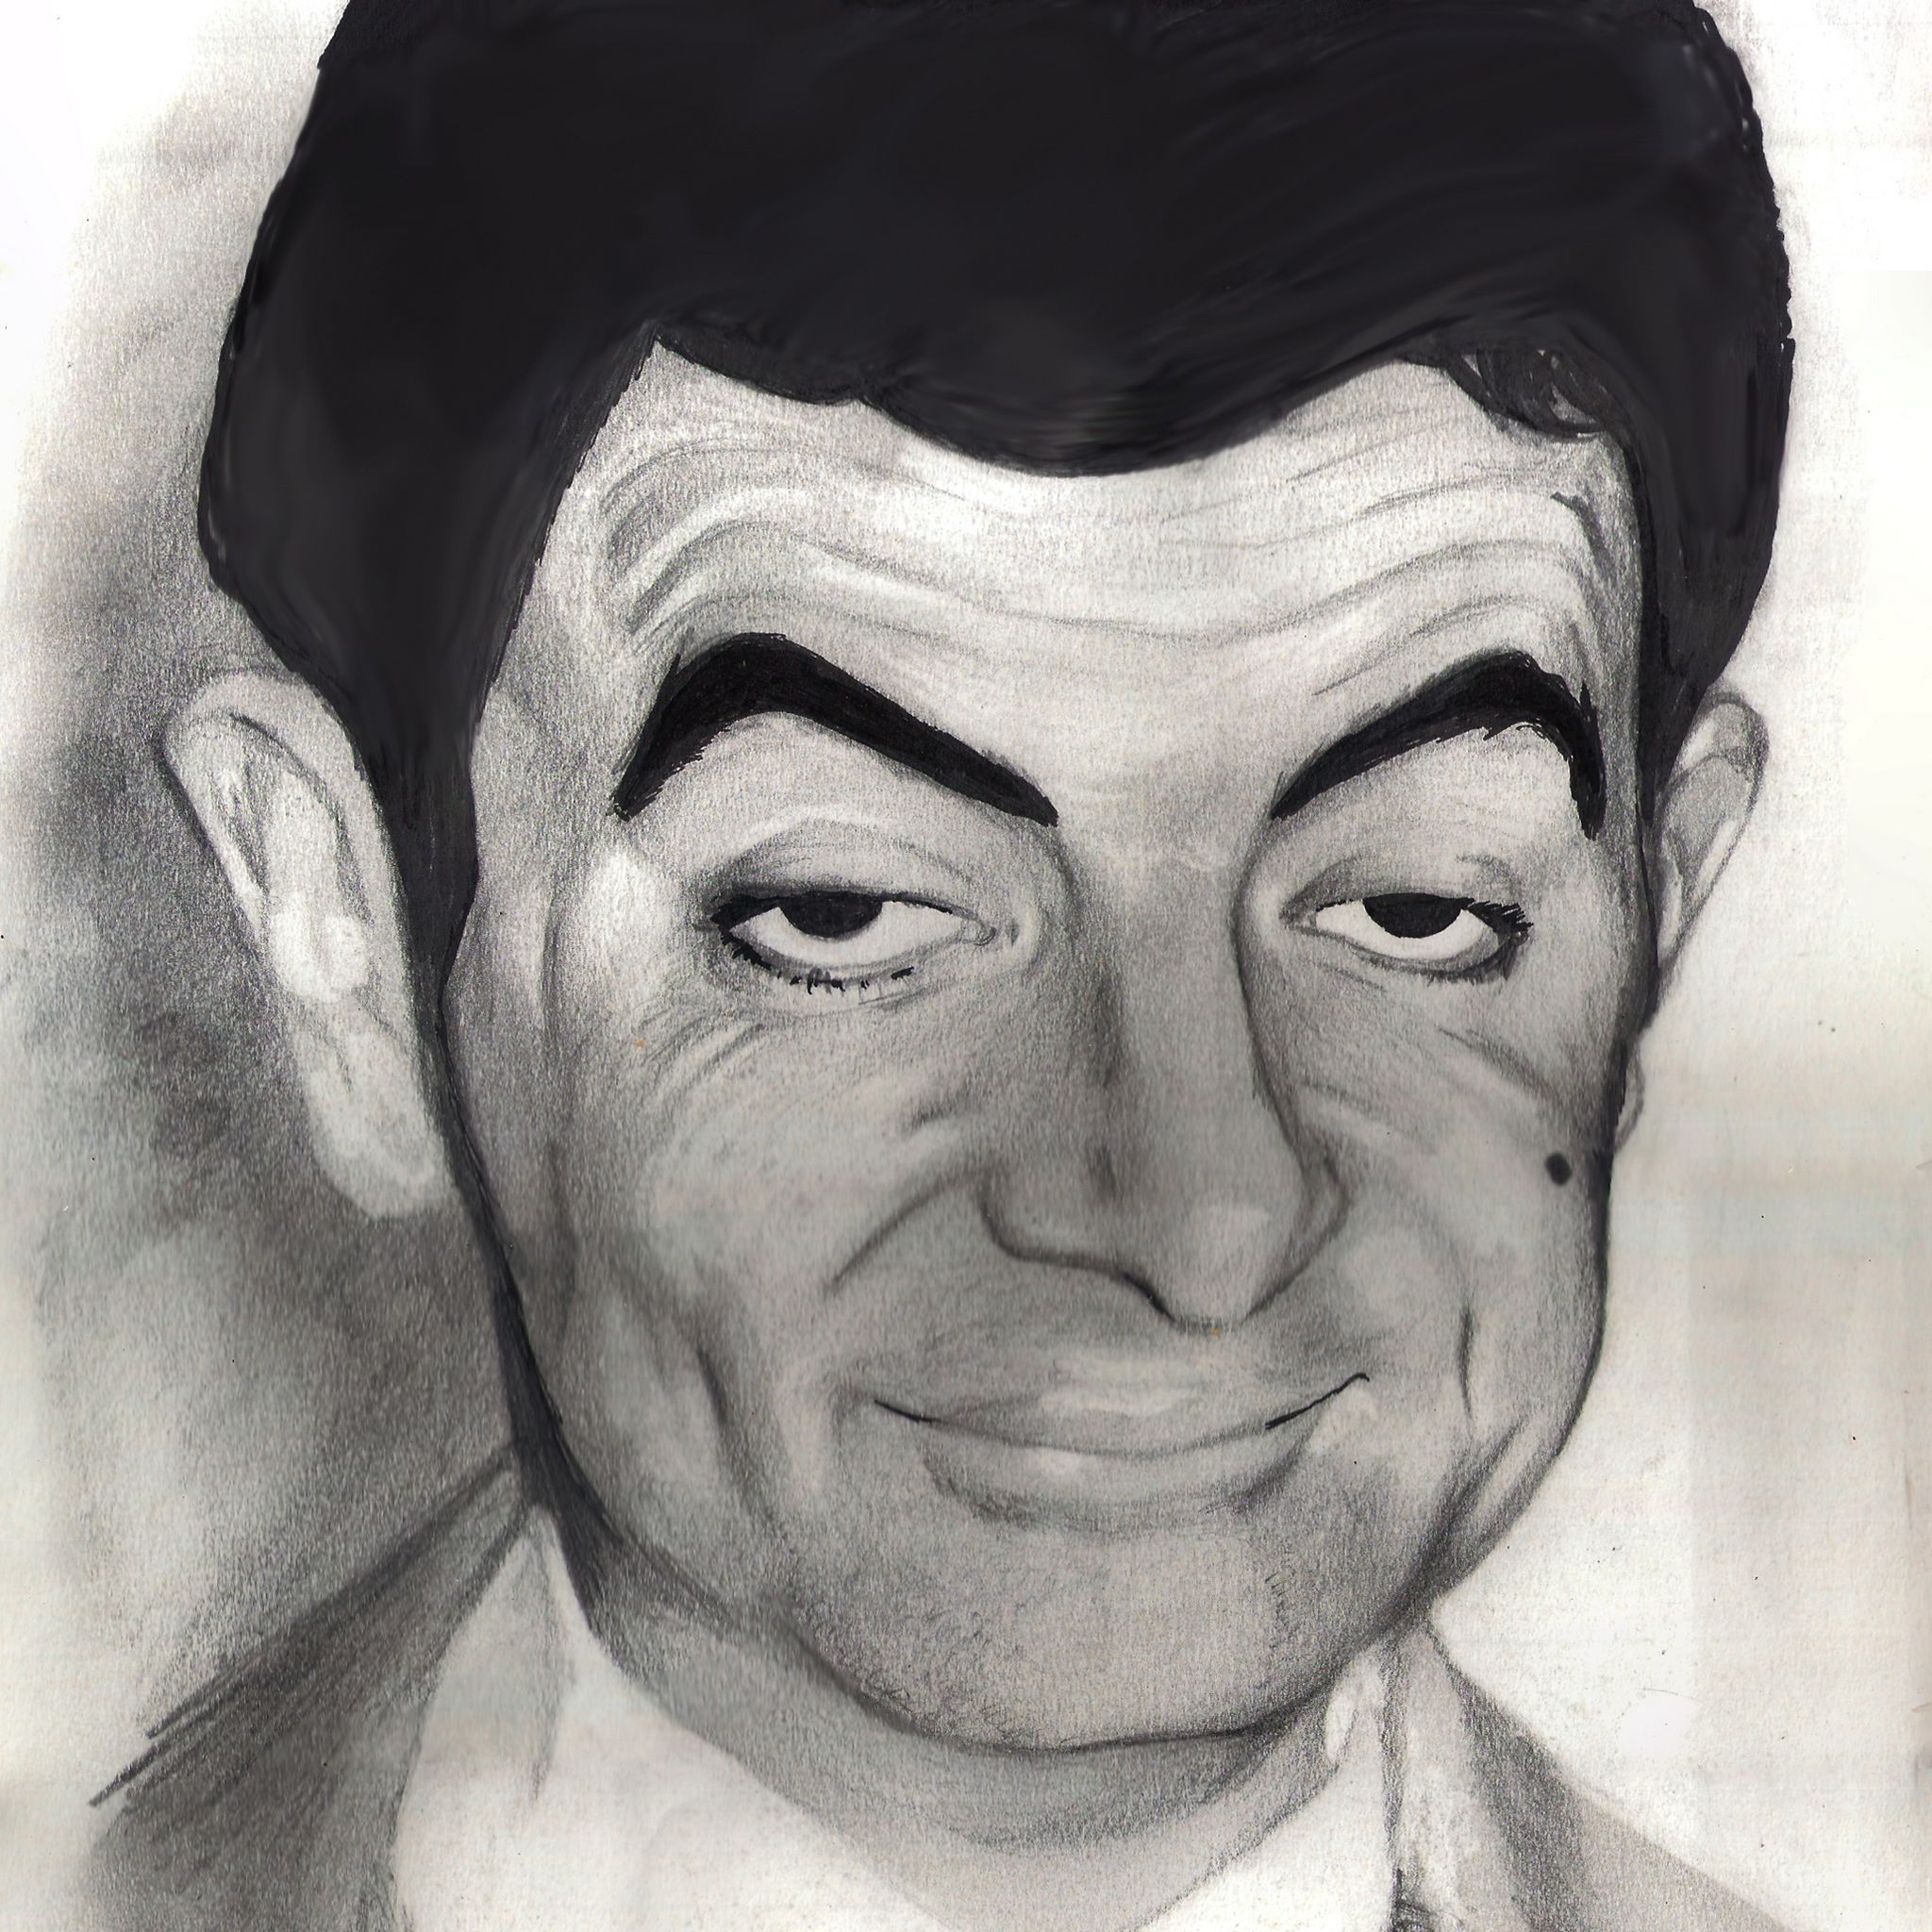 【憨豆先生(Mr. Bean)手绘新iPad壁纸】高清 "憨豆先生(Mr. Bean)手绘新iPad壁纸"第2张_太平洋电脑网壁纸库